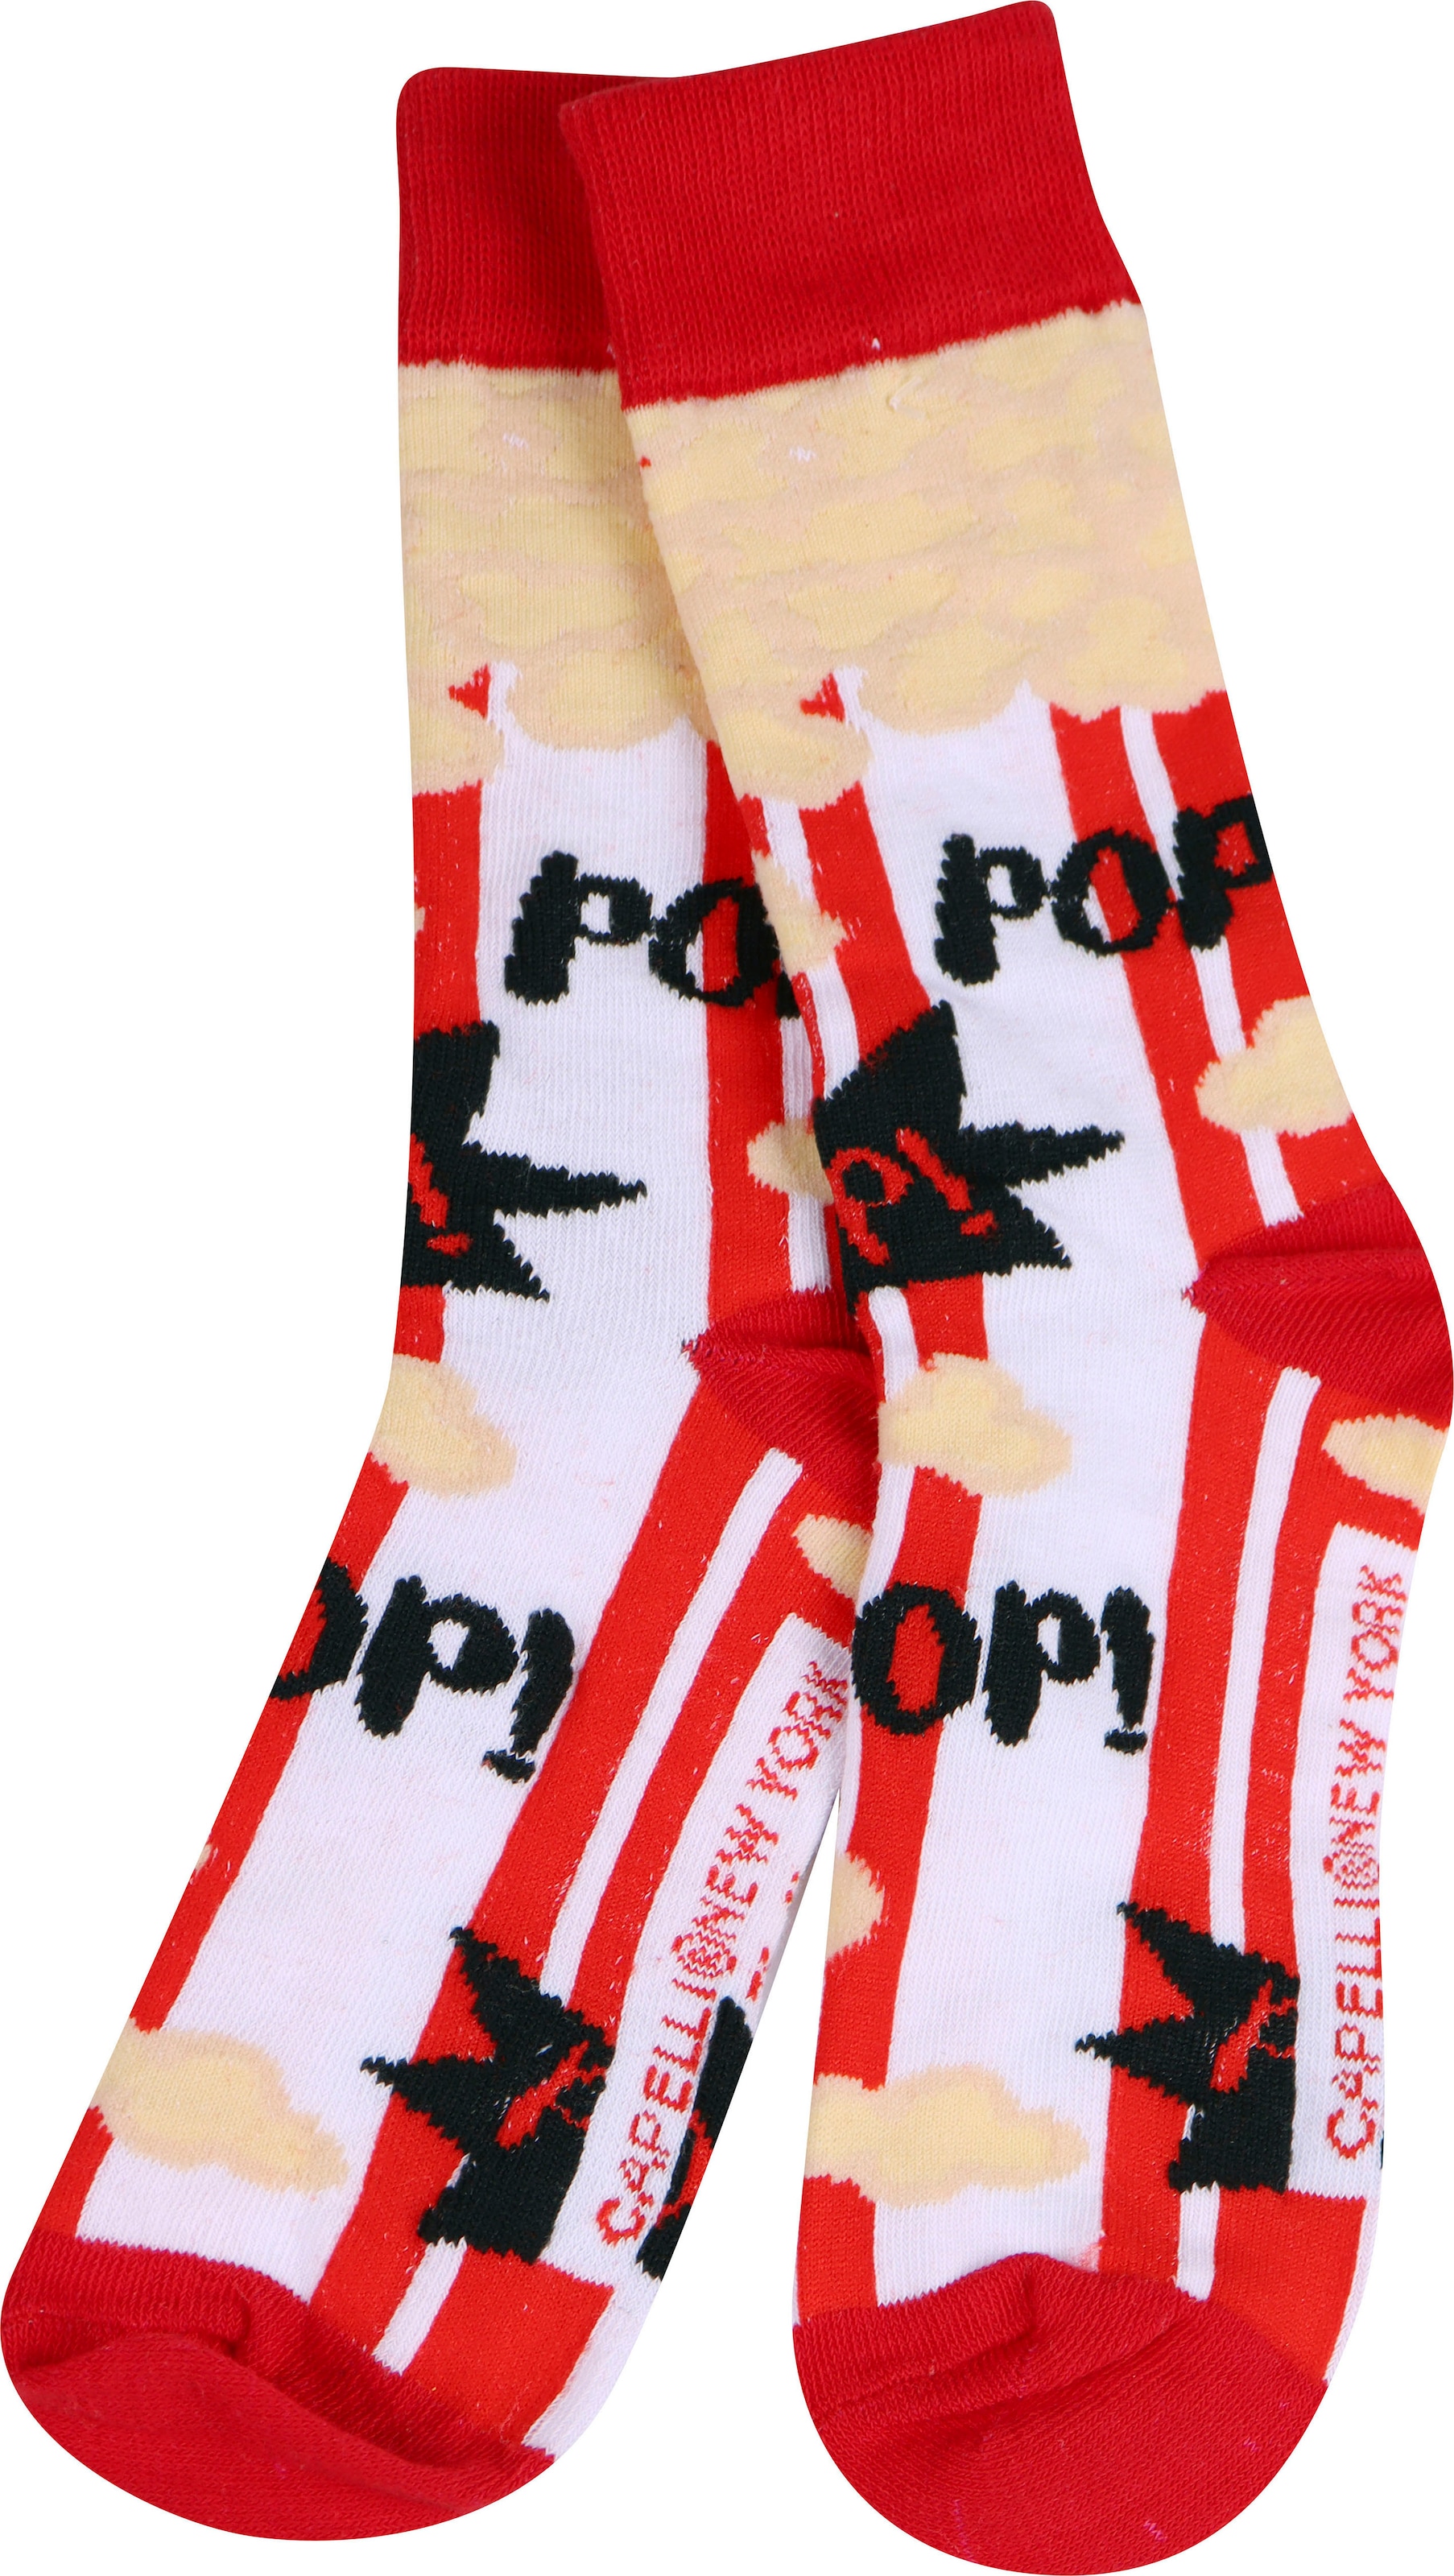 Capelli New York Socken, (Packung, 3 Paar), mit lustigen Designs